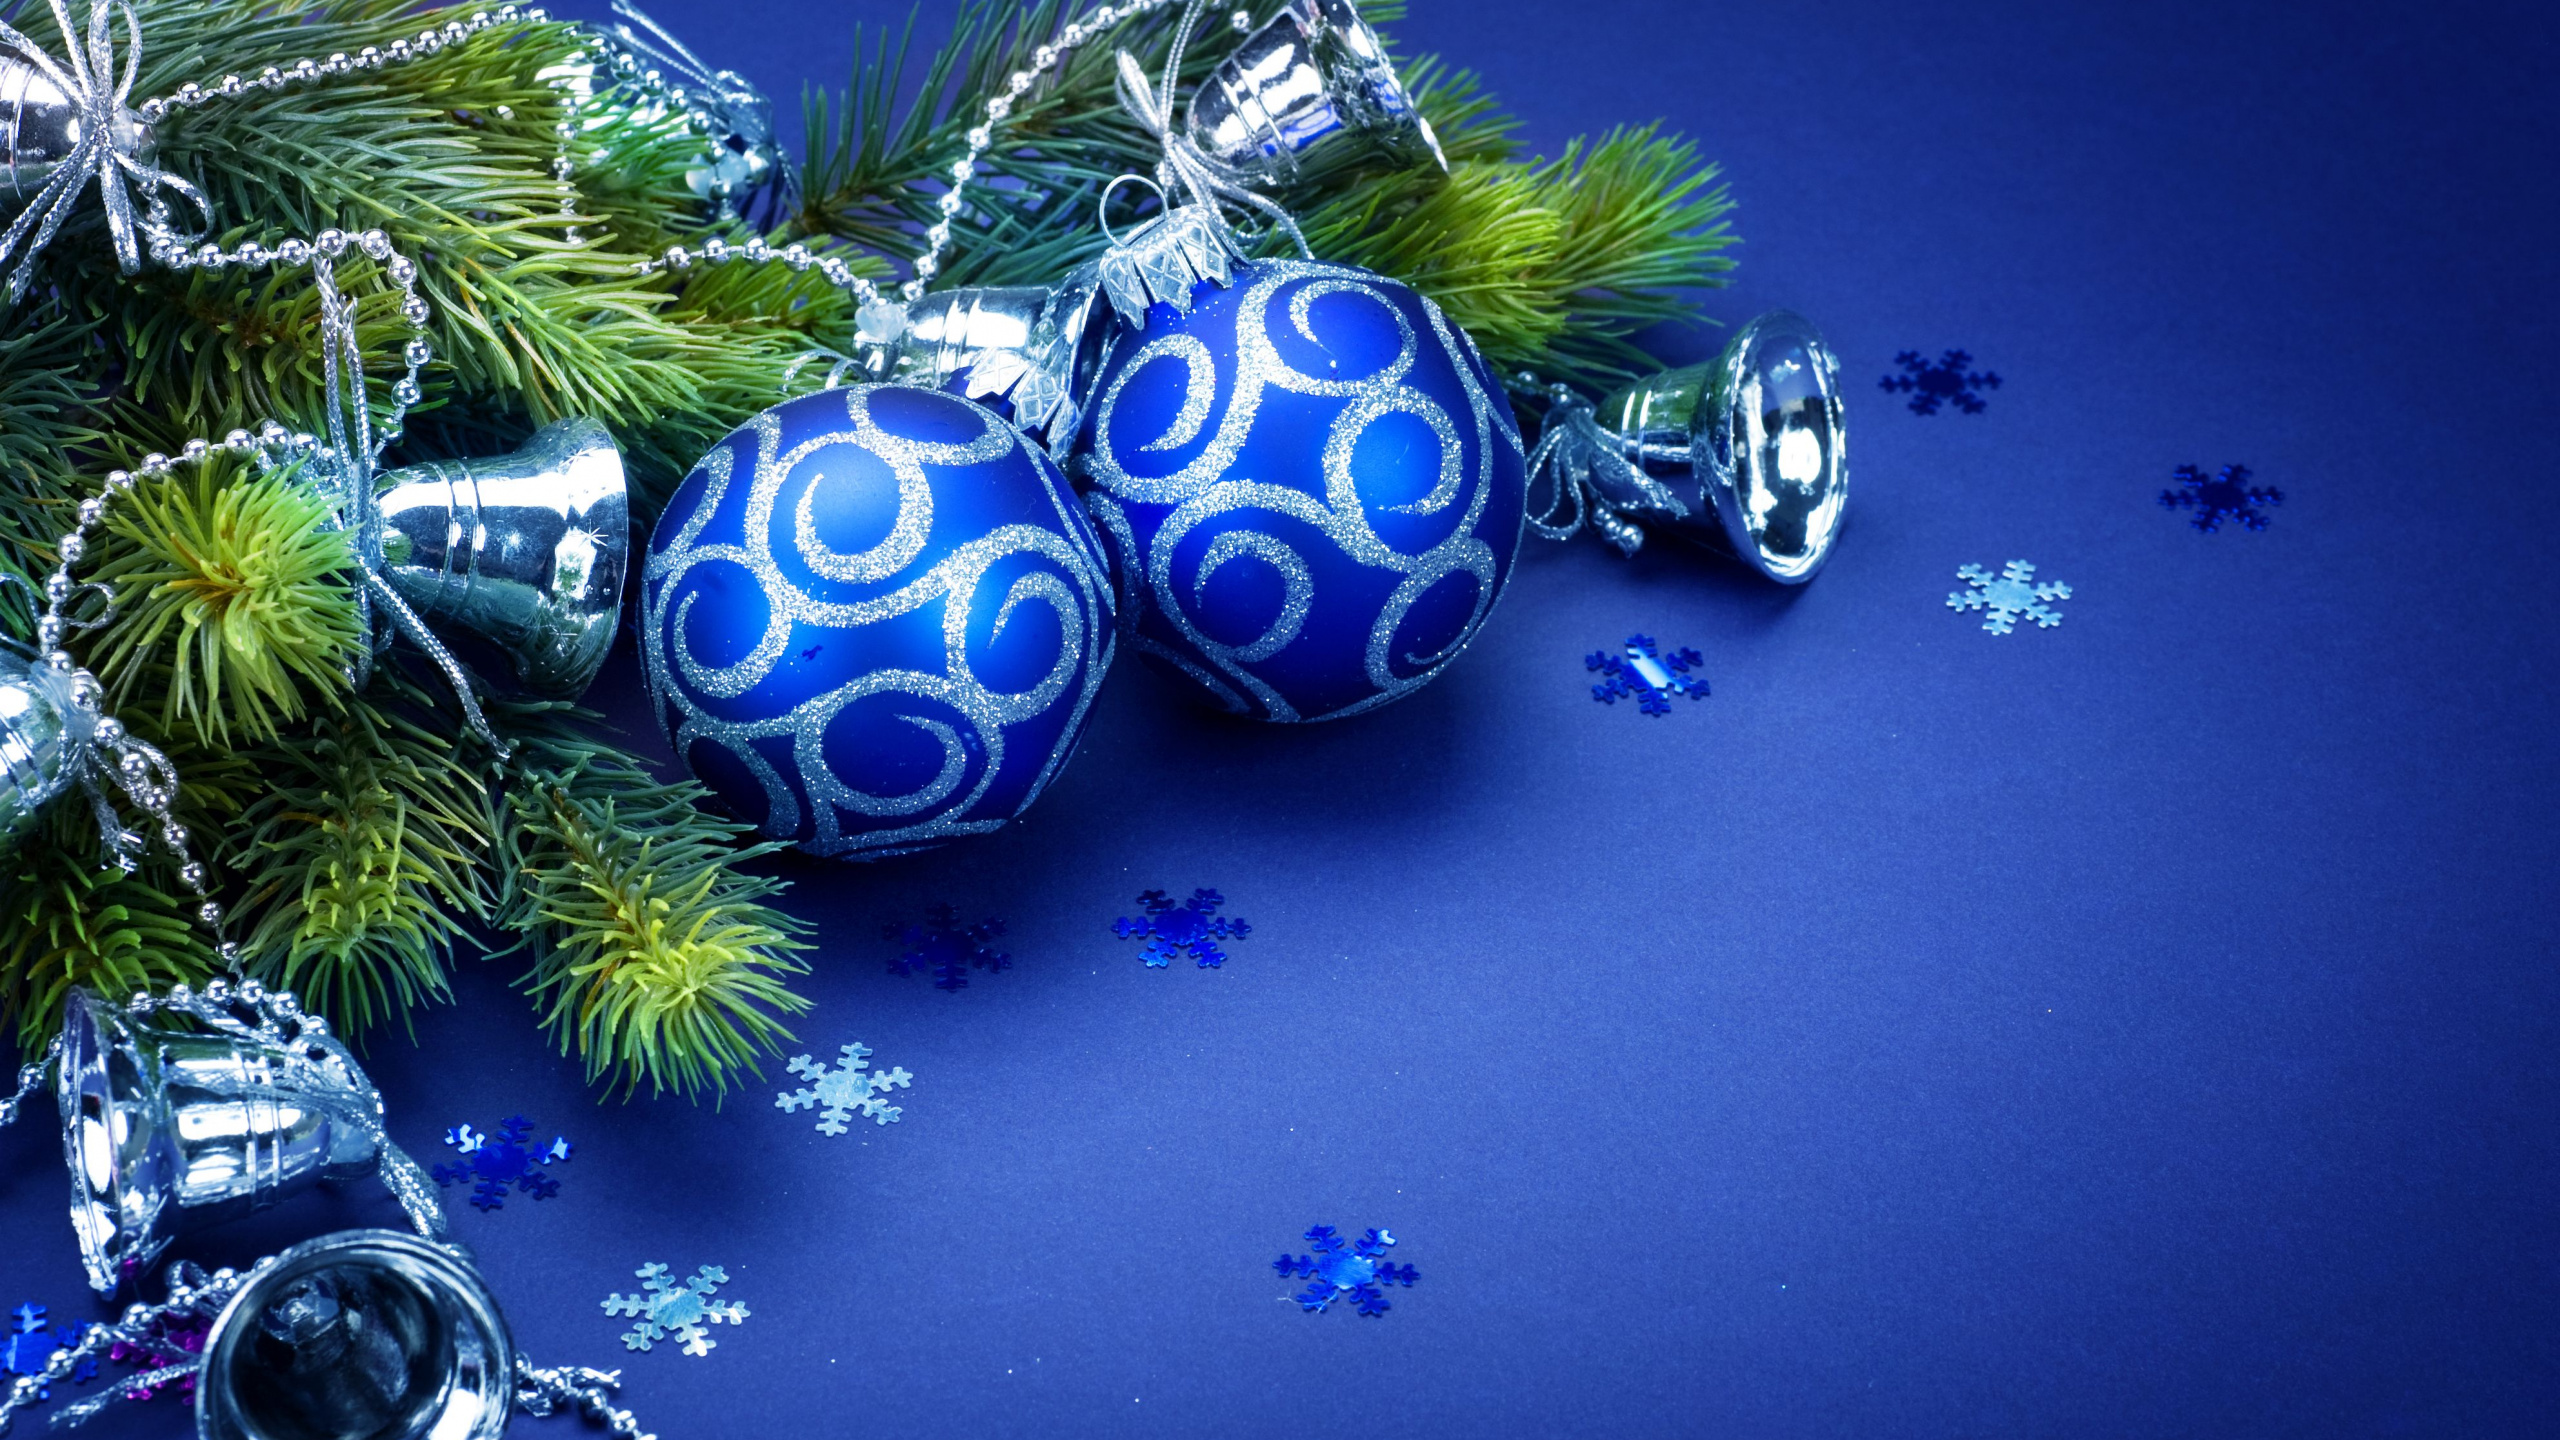 Le Jour De Noël, Ornement de Noël, Blue, Décoration de Noël, Arbre de Noël. Wallpaper in 2560x1440 Resolution